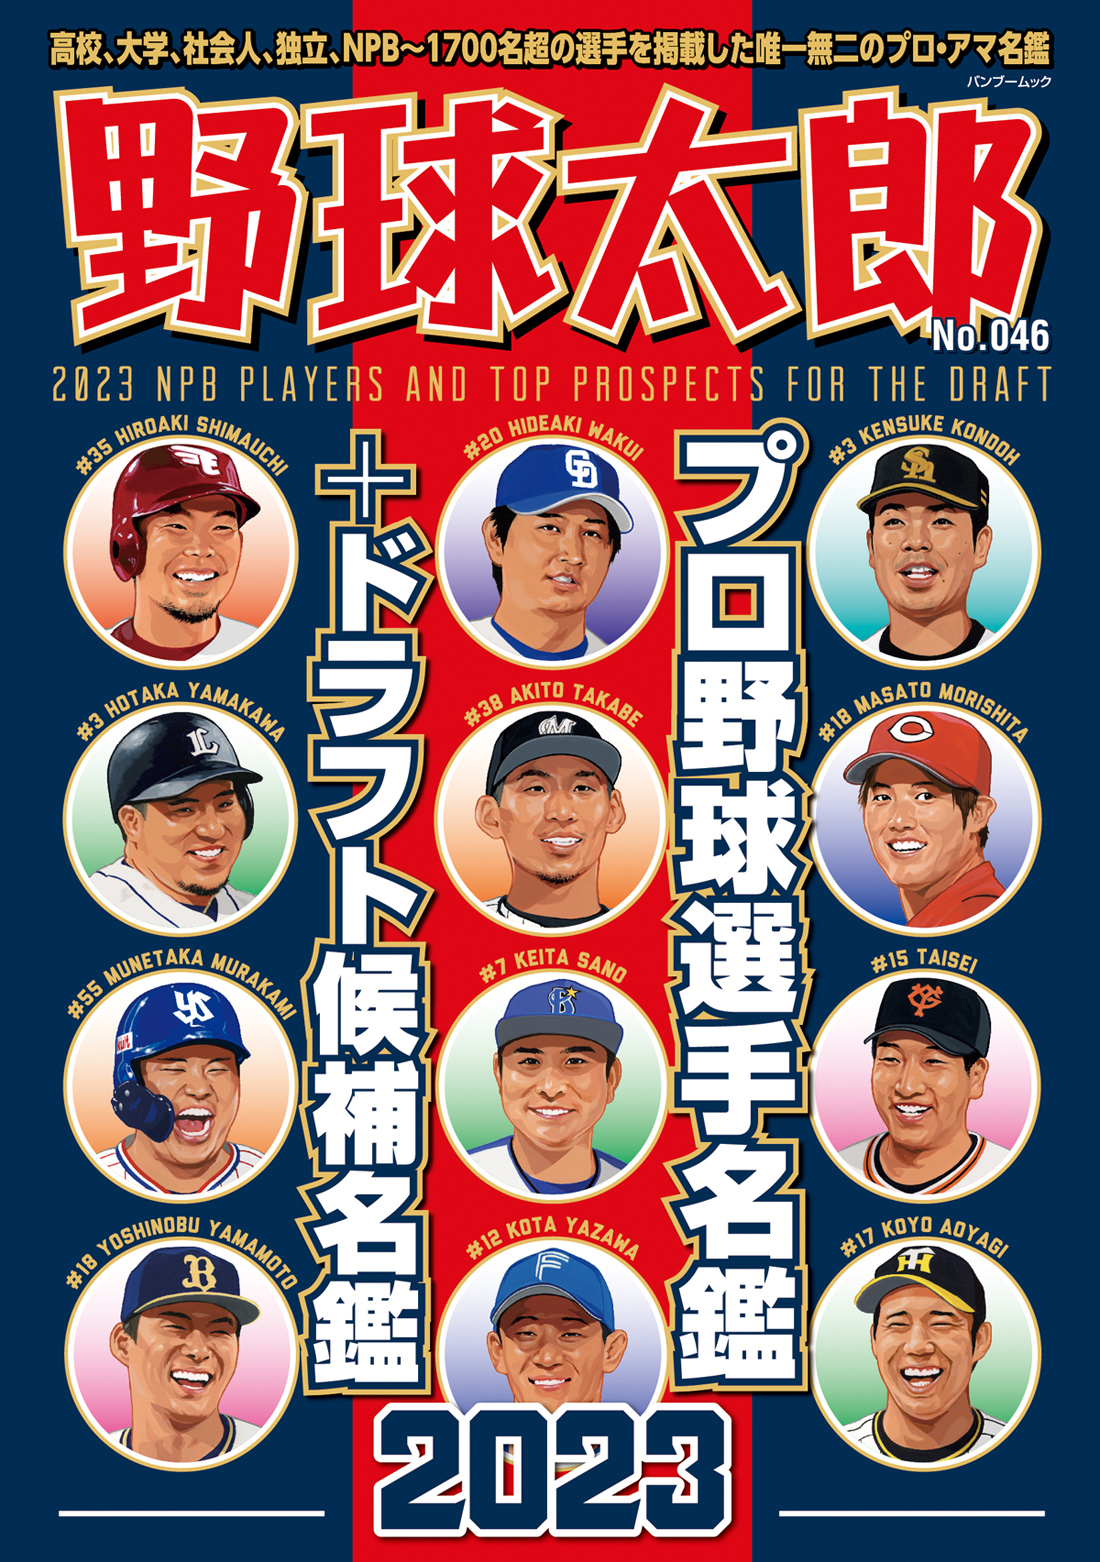 『野球太郎No.046』プロ・アマ総勢1790名を掲載し、選手それぞれの物語性を紹介する選手名鑑号は2月27日に発売！